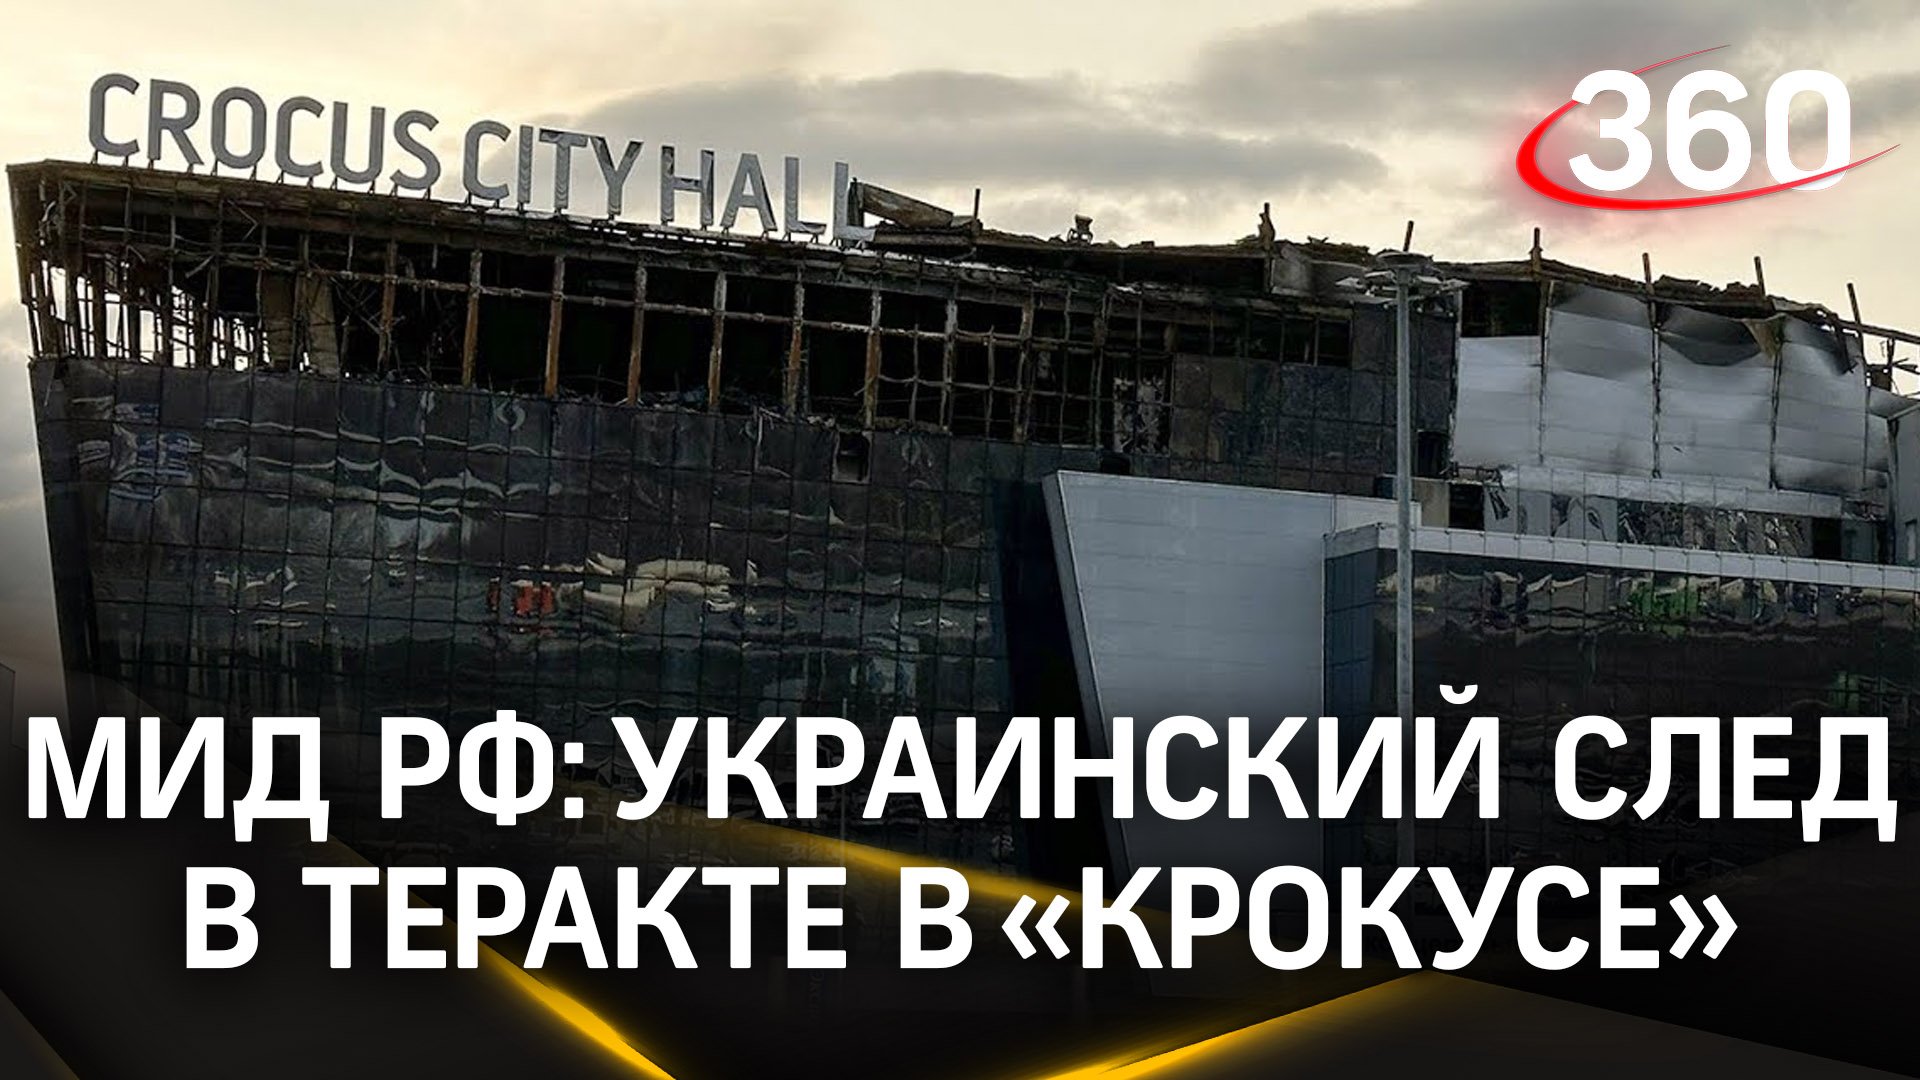 Киев причастен к теракту на «Крокус», взрыву на Крымском мосту, гибели Дугиной и Татарского - МИД РФ